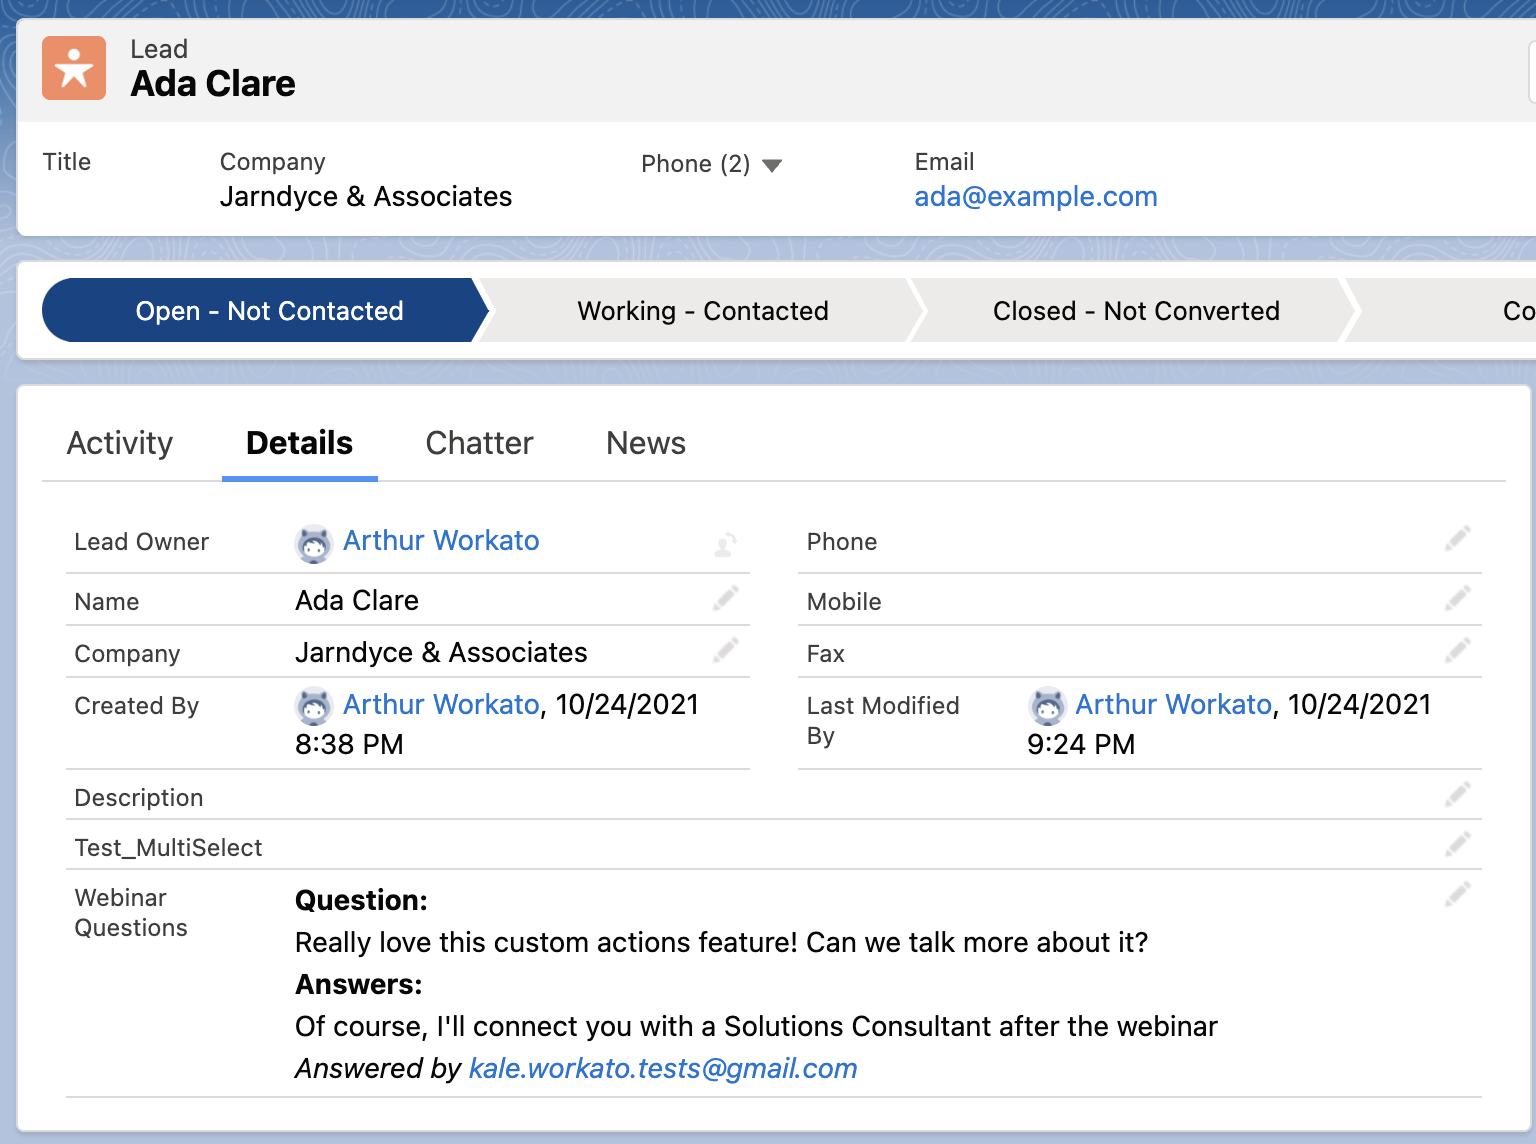 Custom field in SalesForce to capture webinar questions